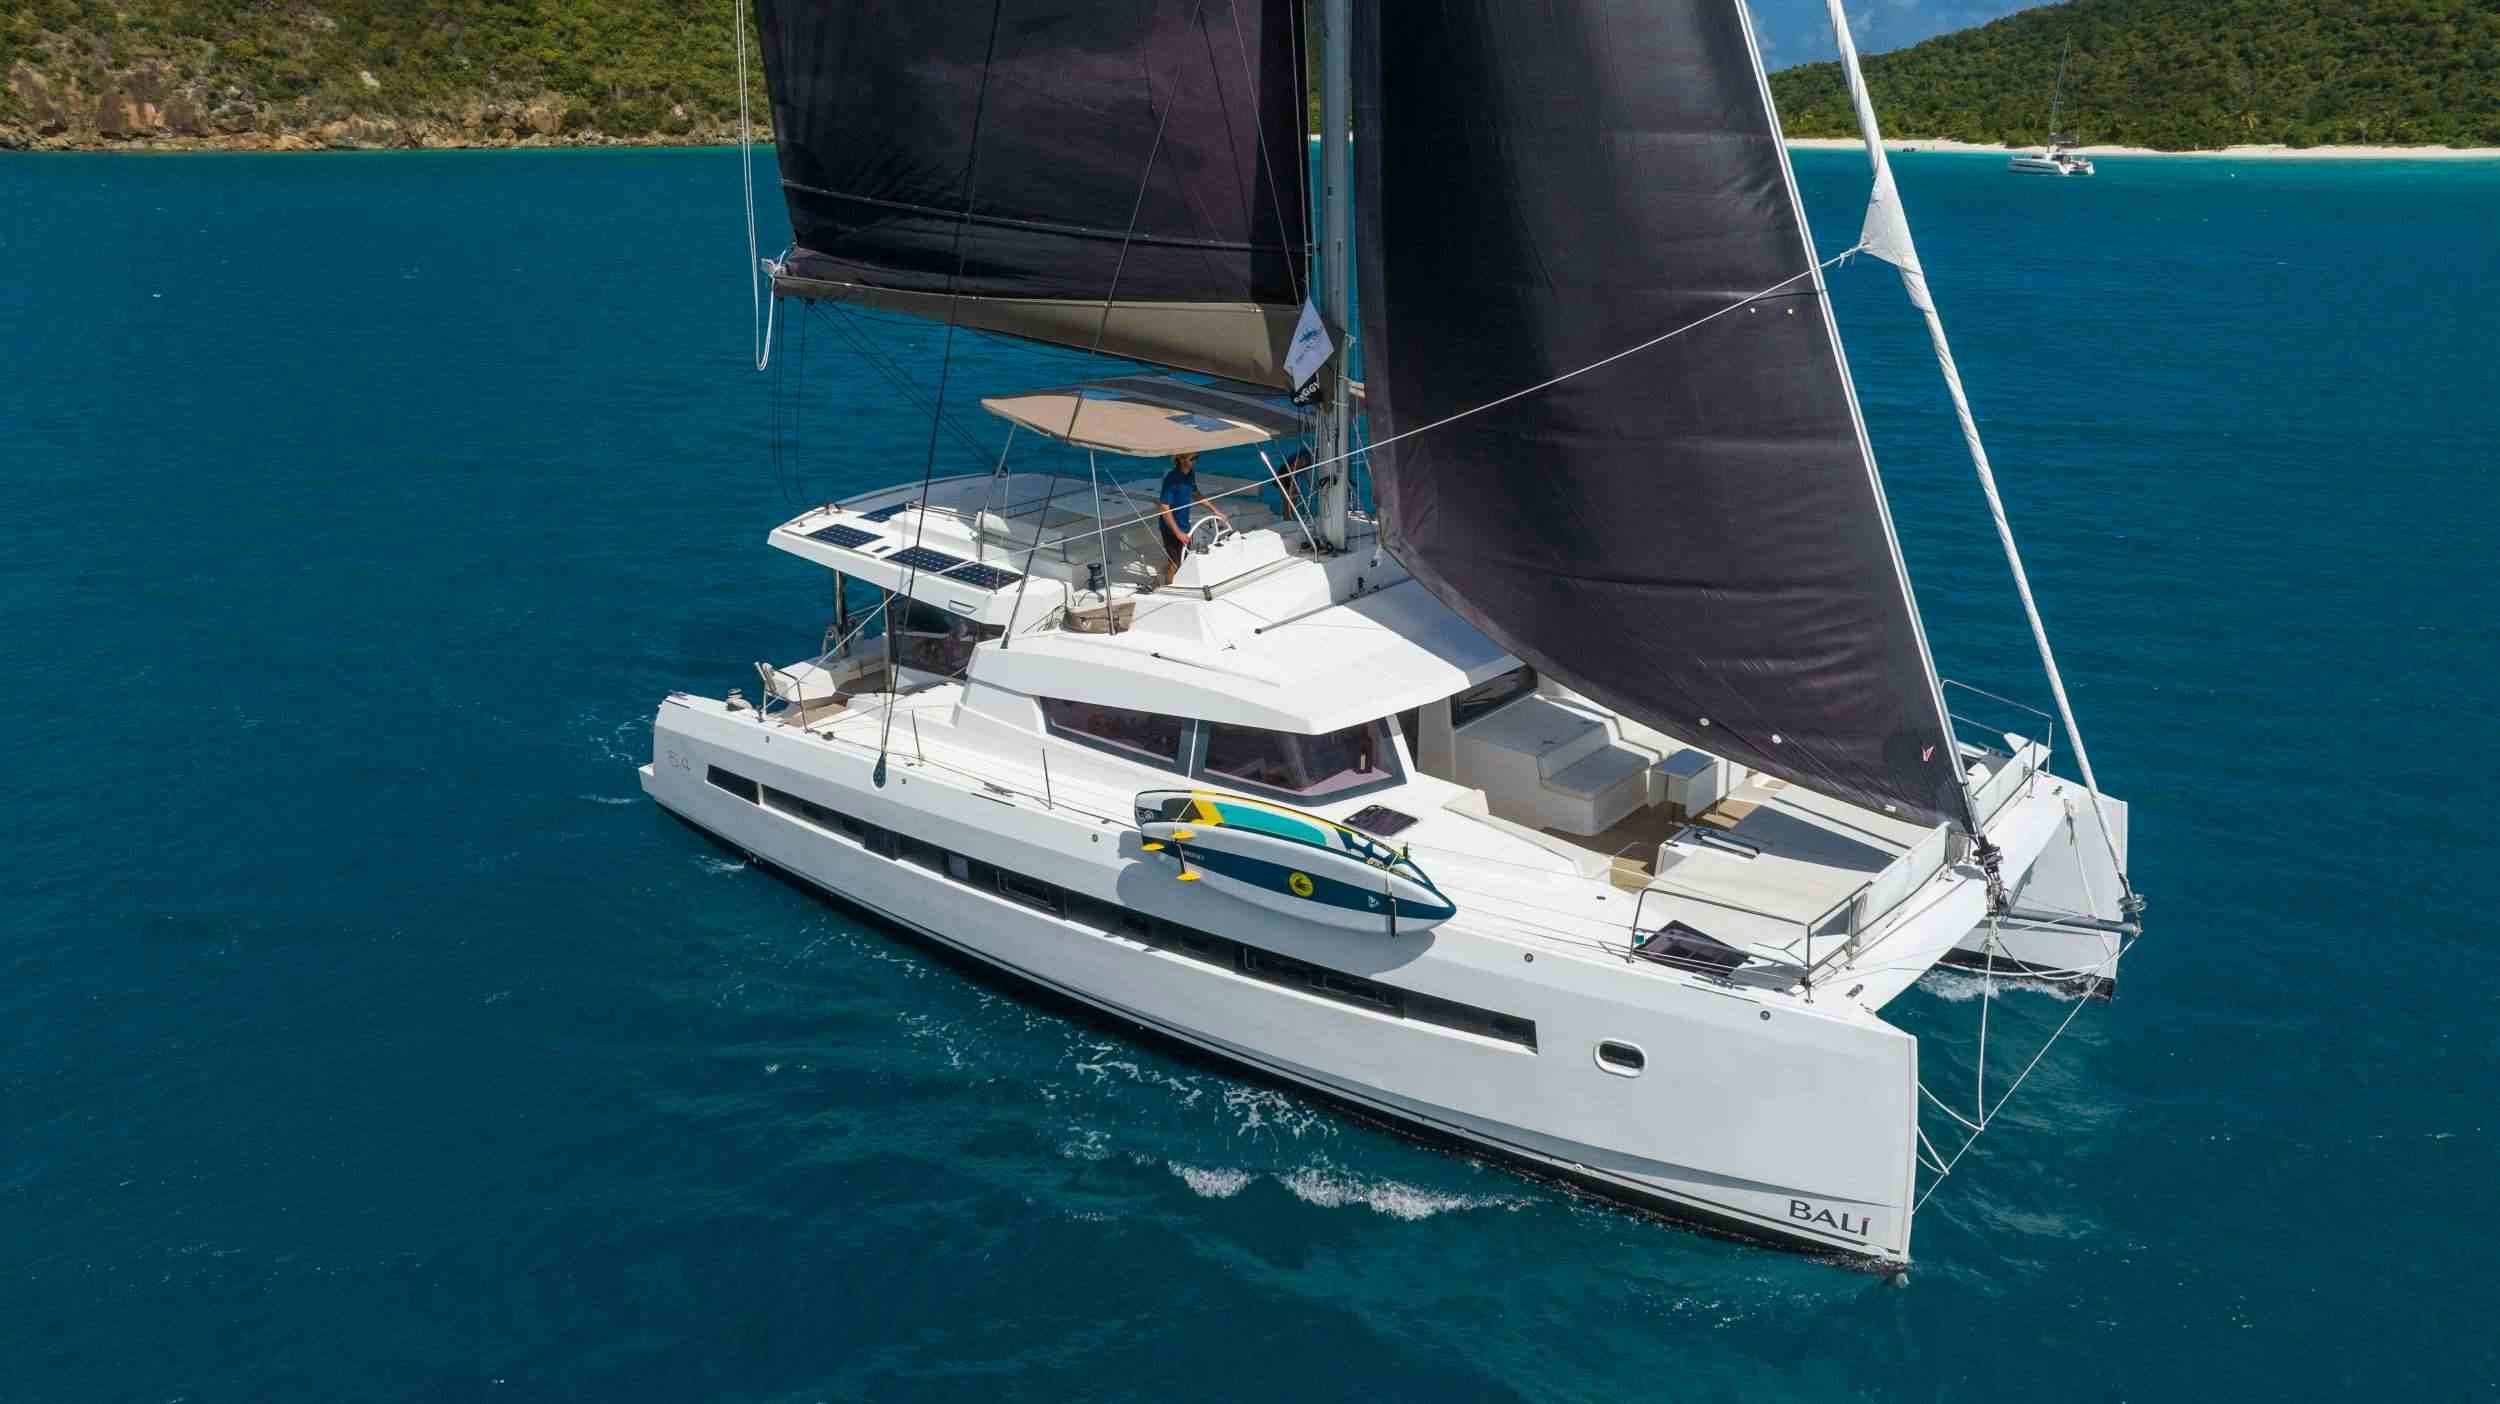 SUN DAZE 5.4 - Yacht Charter Rodney Bay & Boat hire in Caribbean 1